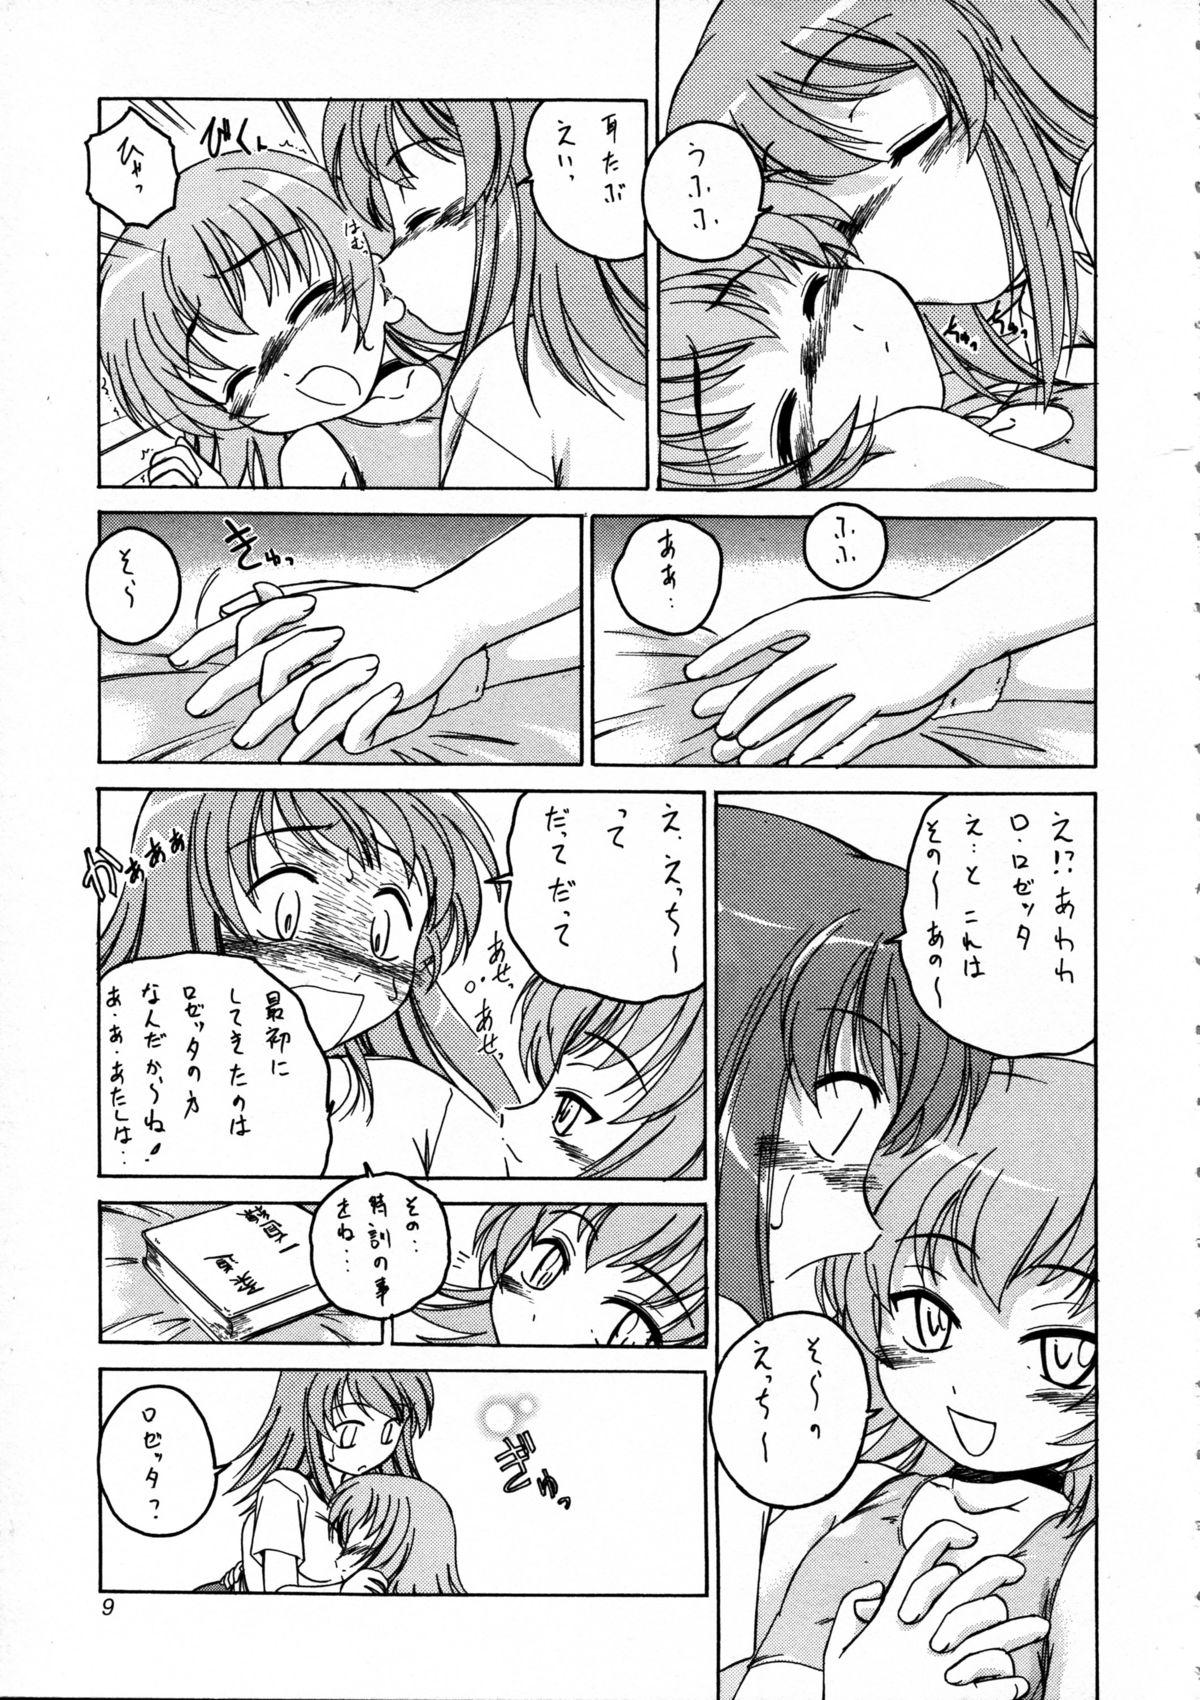 Huge Manga Sangyou Haikibutsu 09 - Kaleido star Beard - Page 9